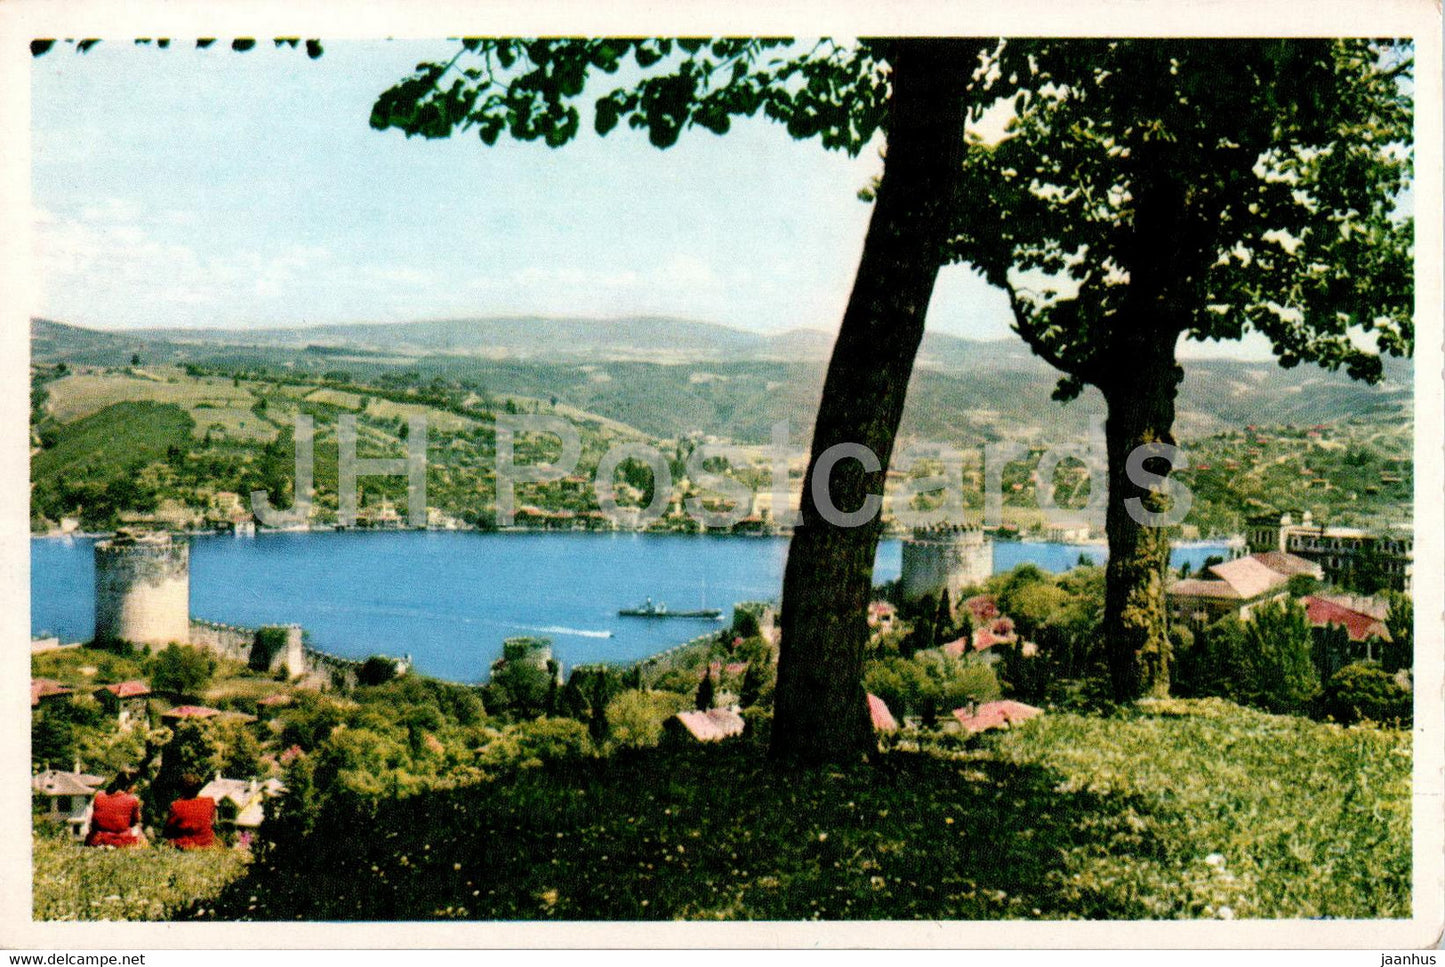 Istanbul - Rumeli Hisar Towers on the Bosphore - old postcard - 1961 - Turkey - used - JH Postcards